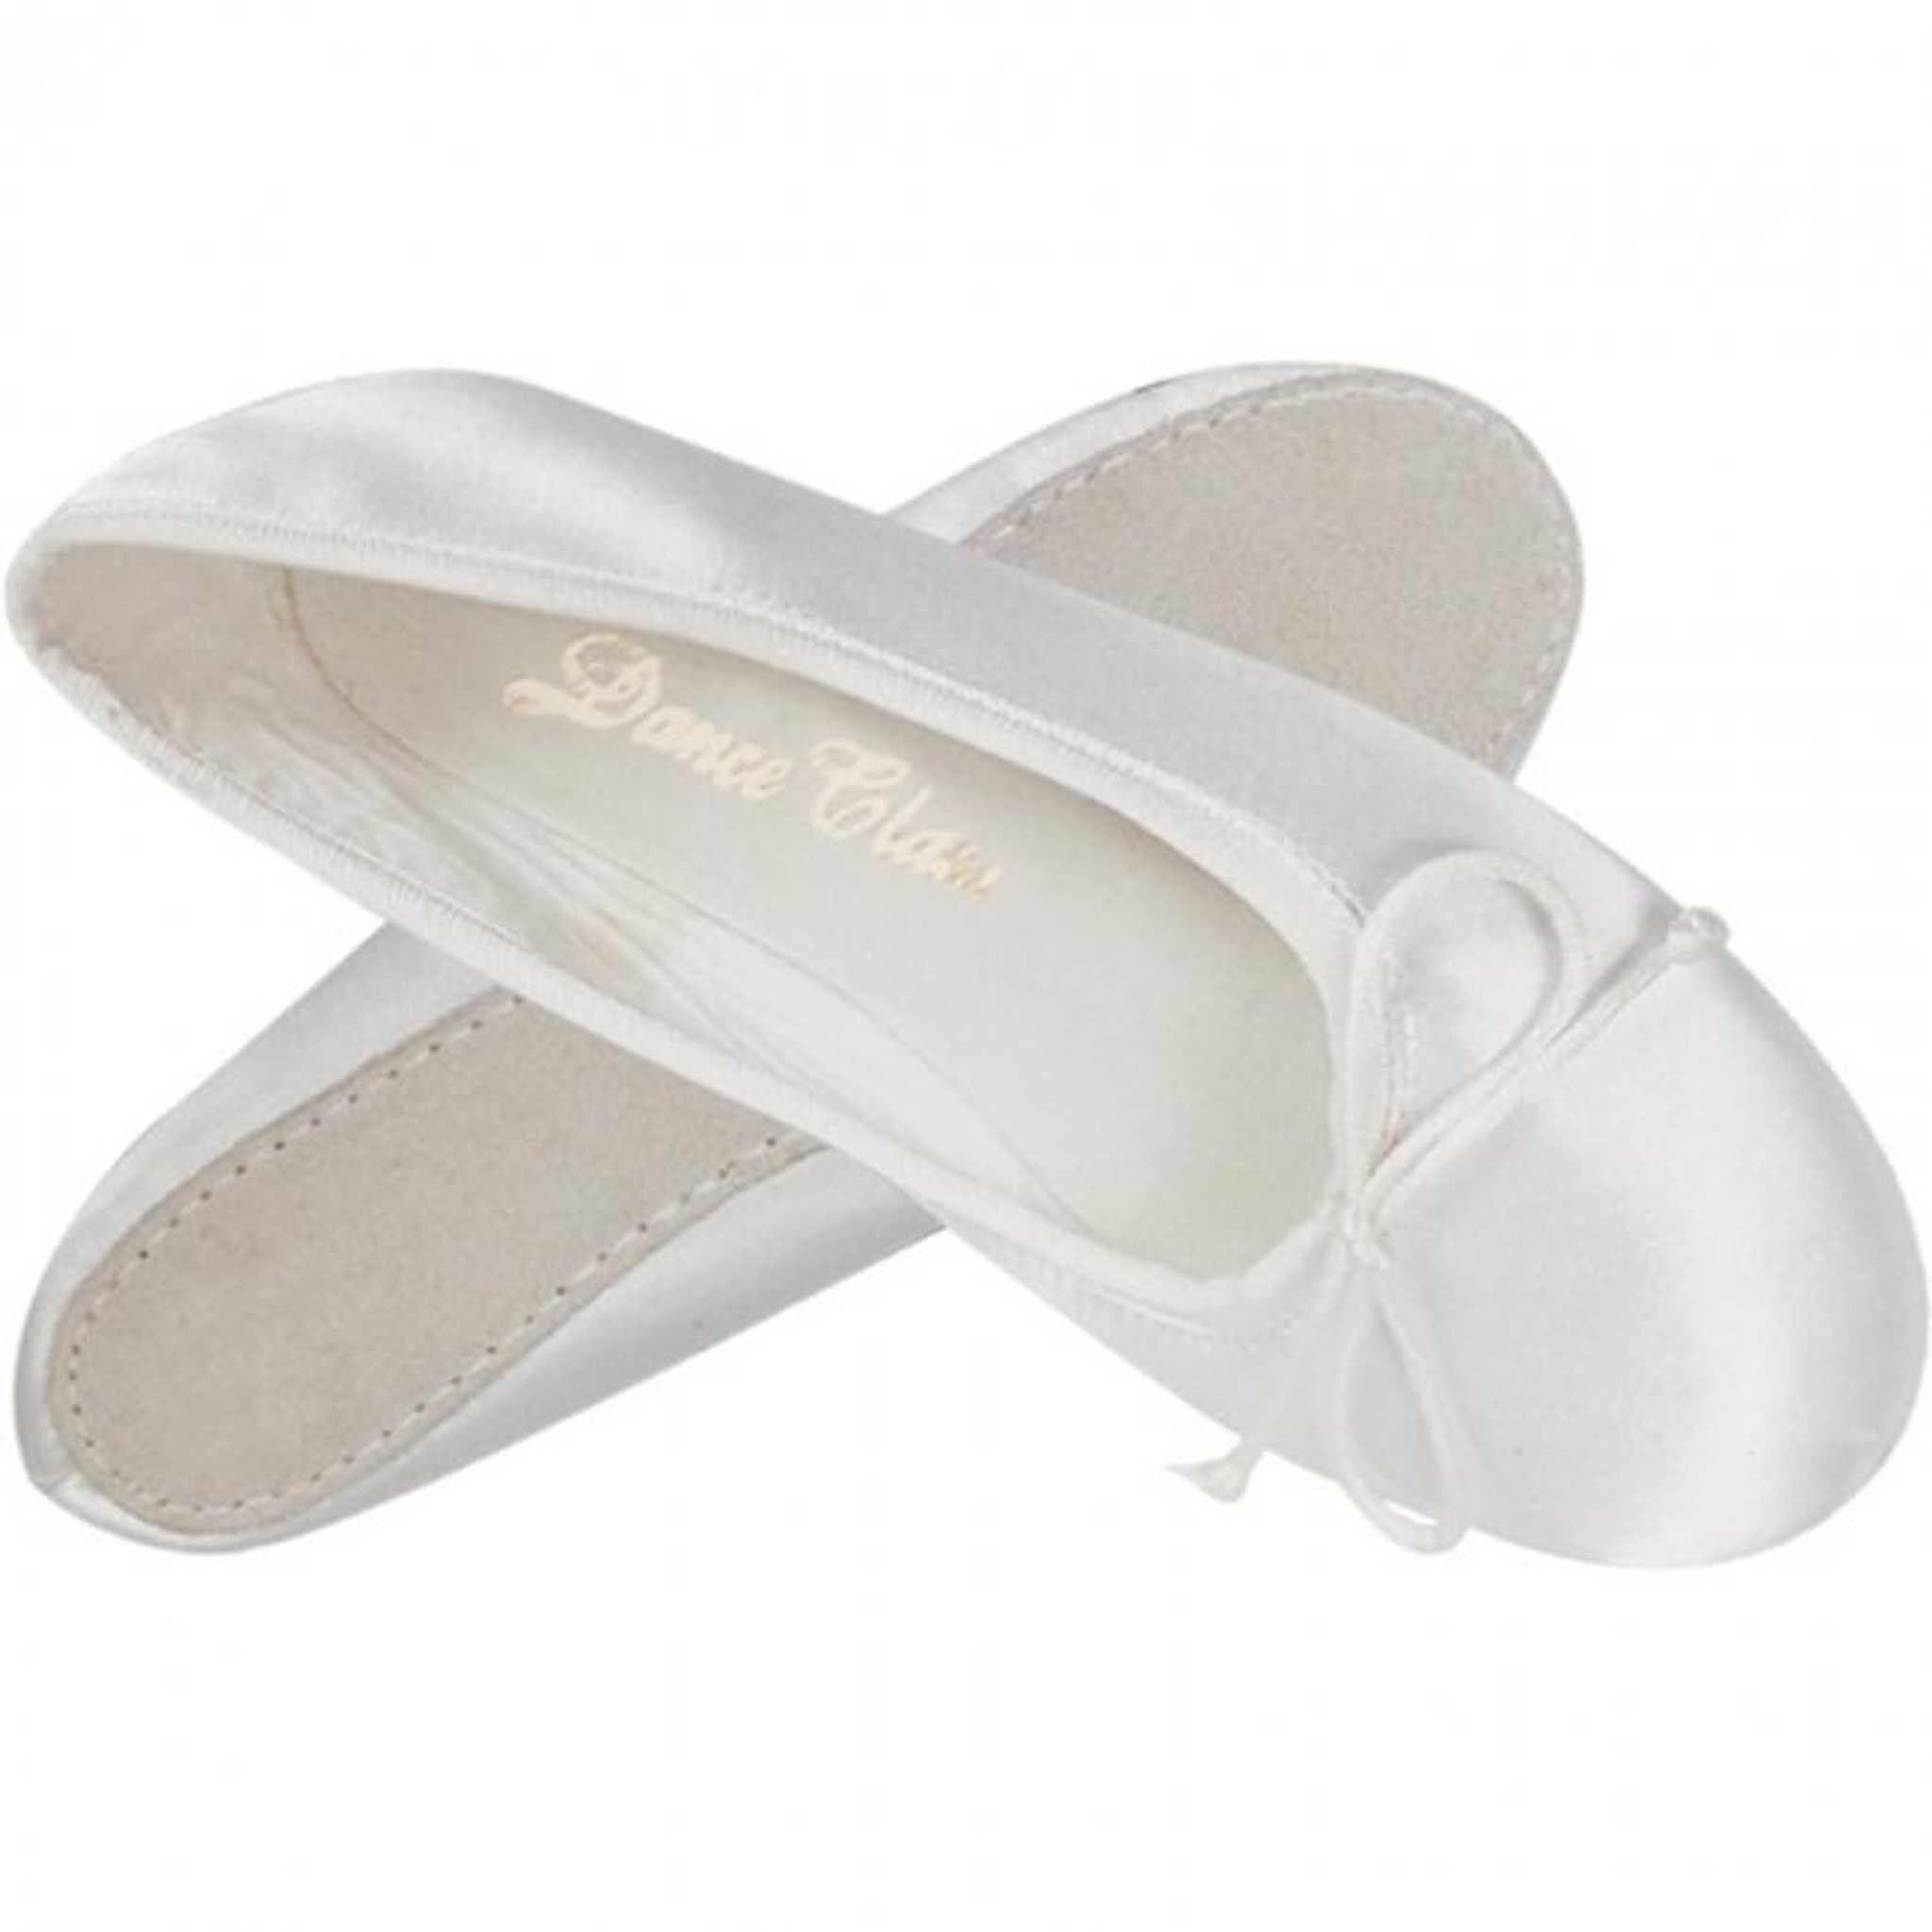 white satin ballet shoes